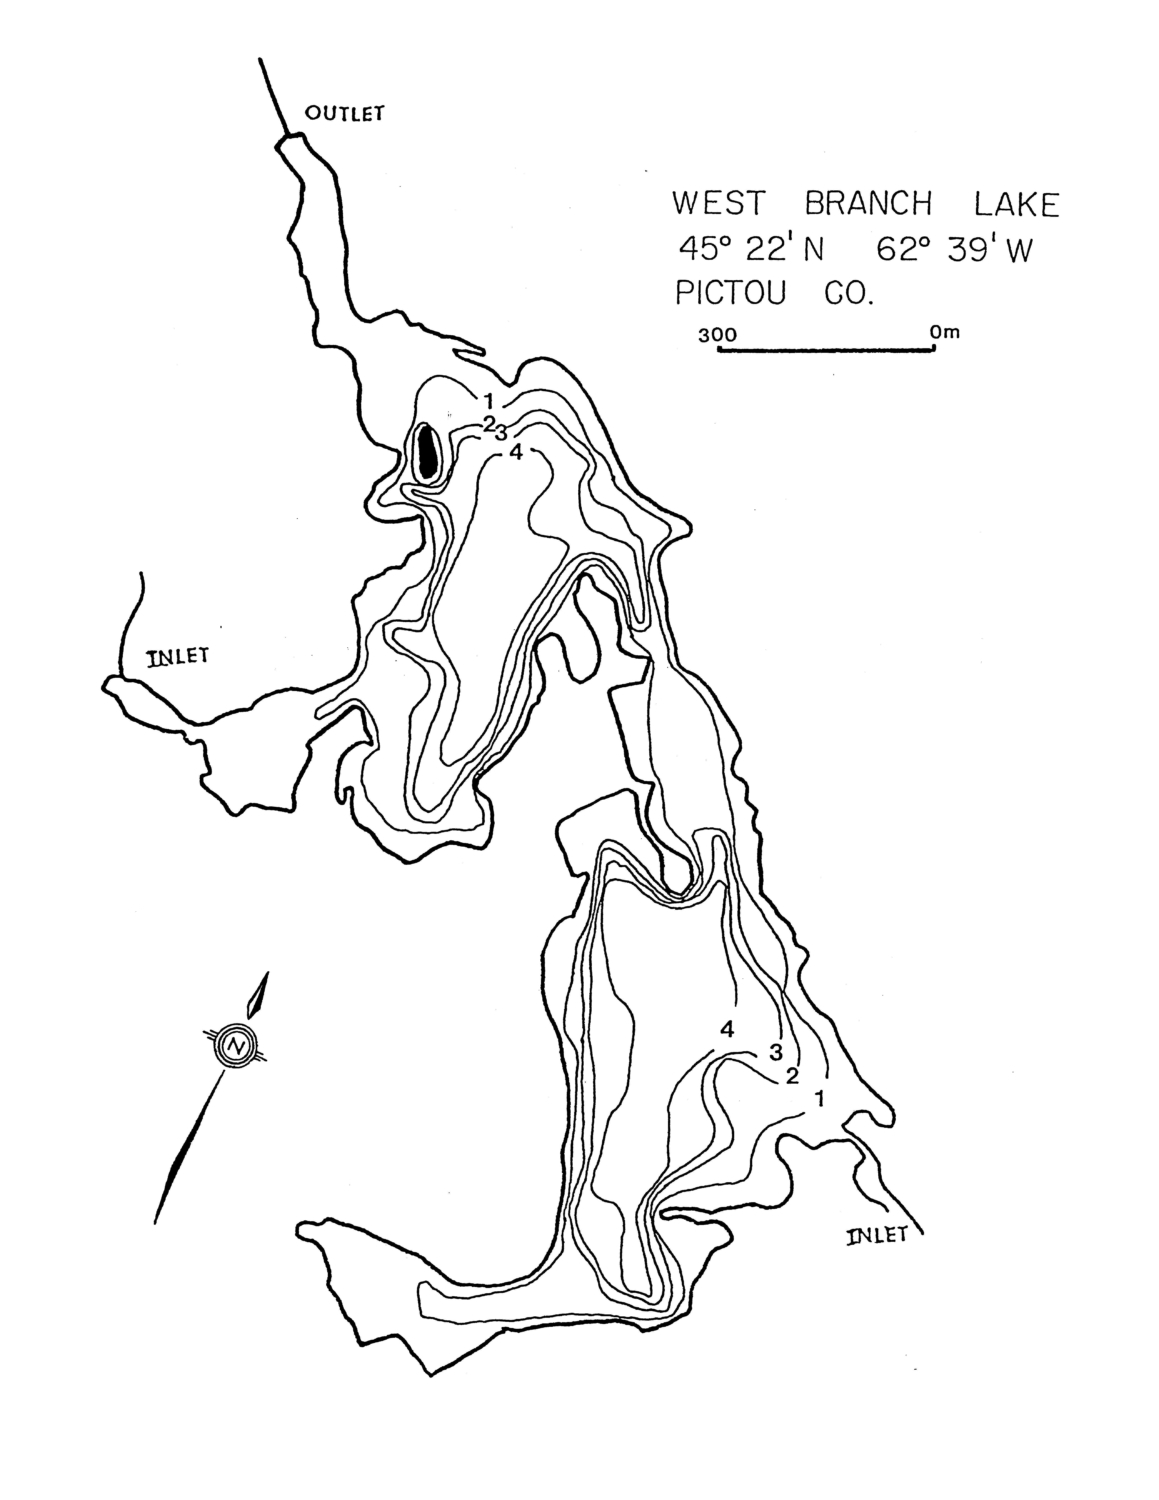 West Branch Lake - Pictou County Lake Maps